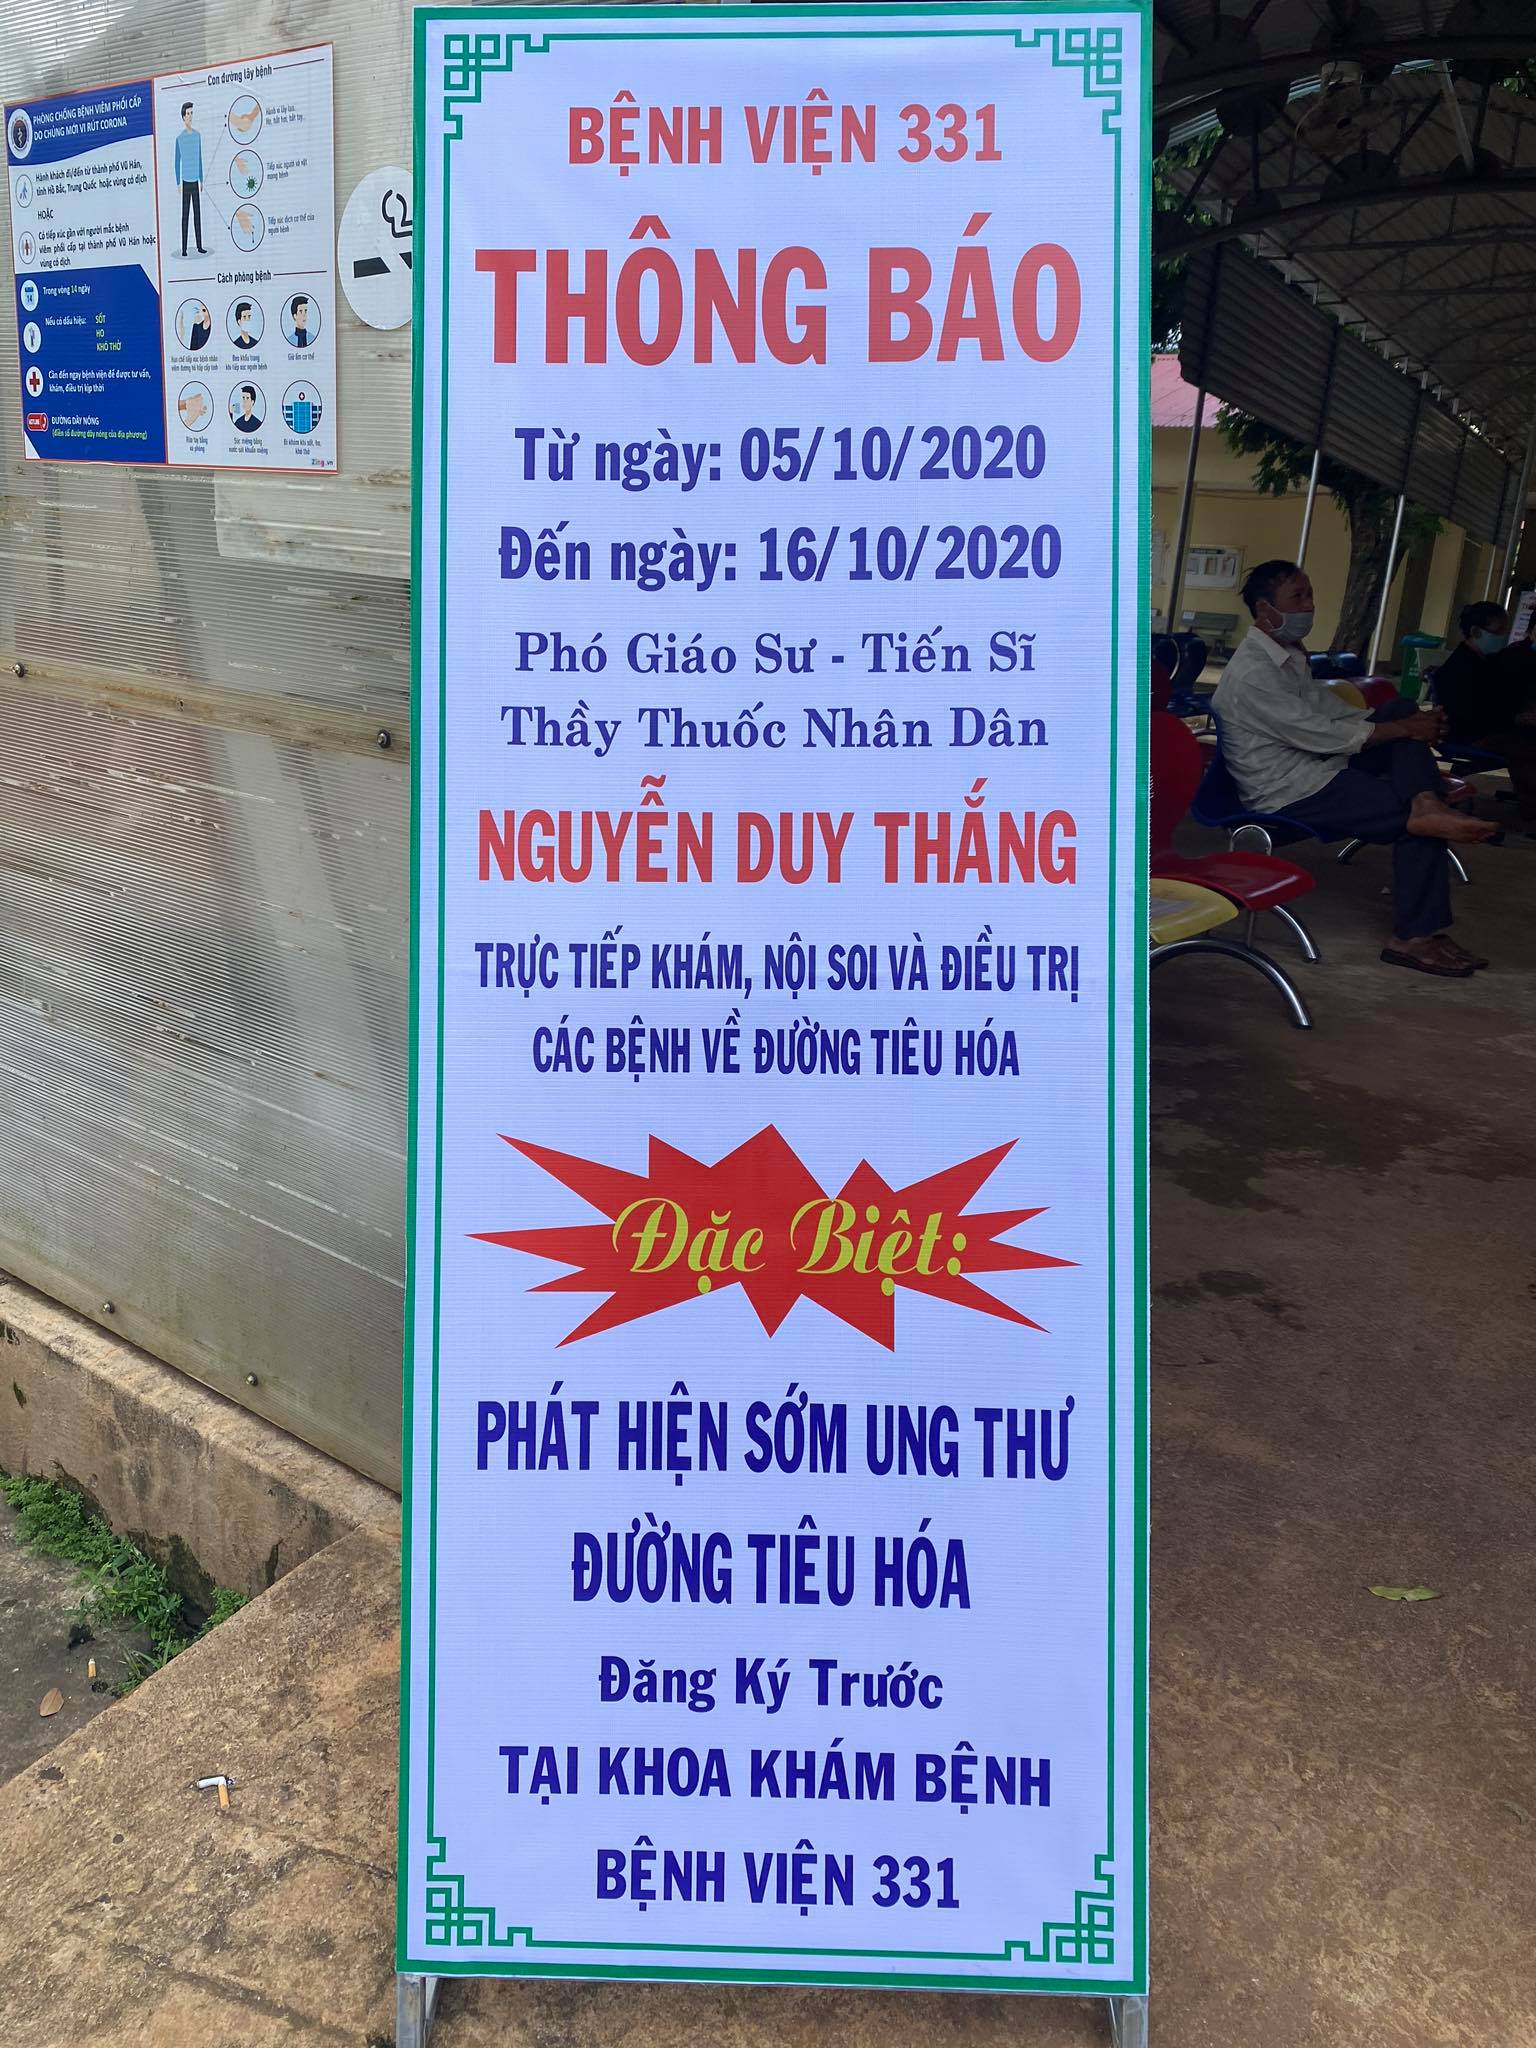 Thông báo lịch khám nội soi tiêu hóa của PGS.TS.TTND Nguyễn Duy Thắng tại Bệnh viện 331